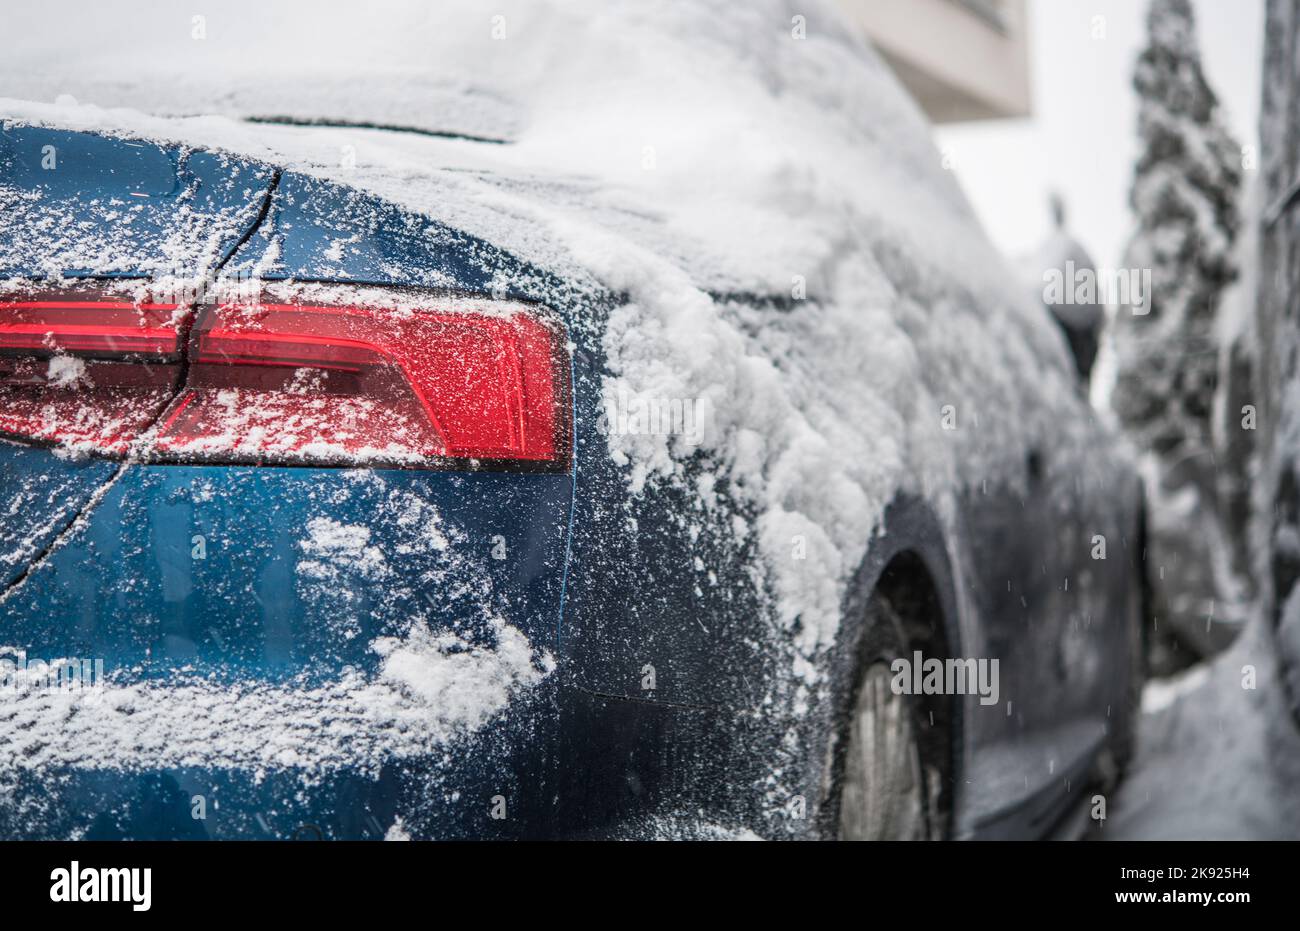 Nahaufnahme des blauen Fahrzeugs mit Schnee bedeckt, der im Winter von einem Fahrer ohne Garage draußen geparkt wurde. Parkprobleme In Der Kalten Jahreszeit. Stockfoto